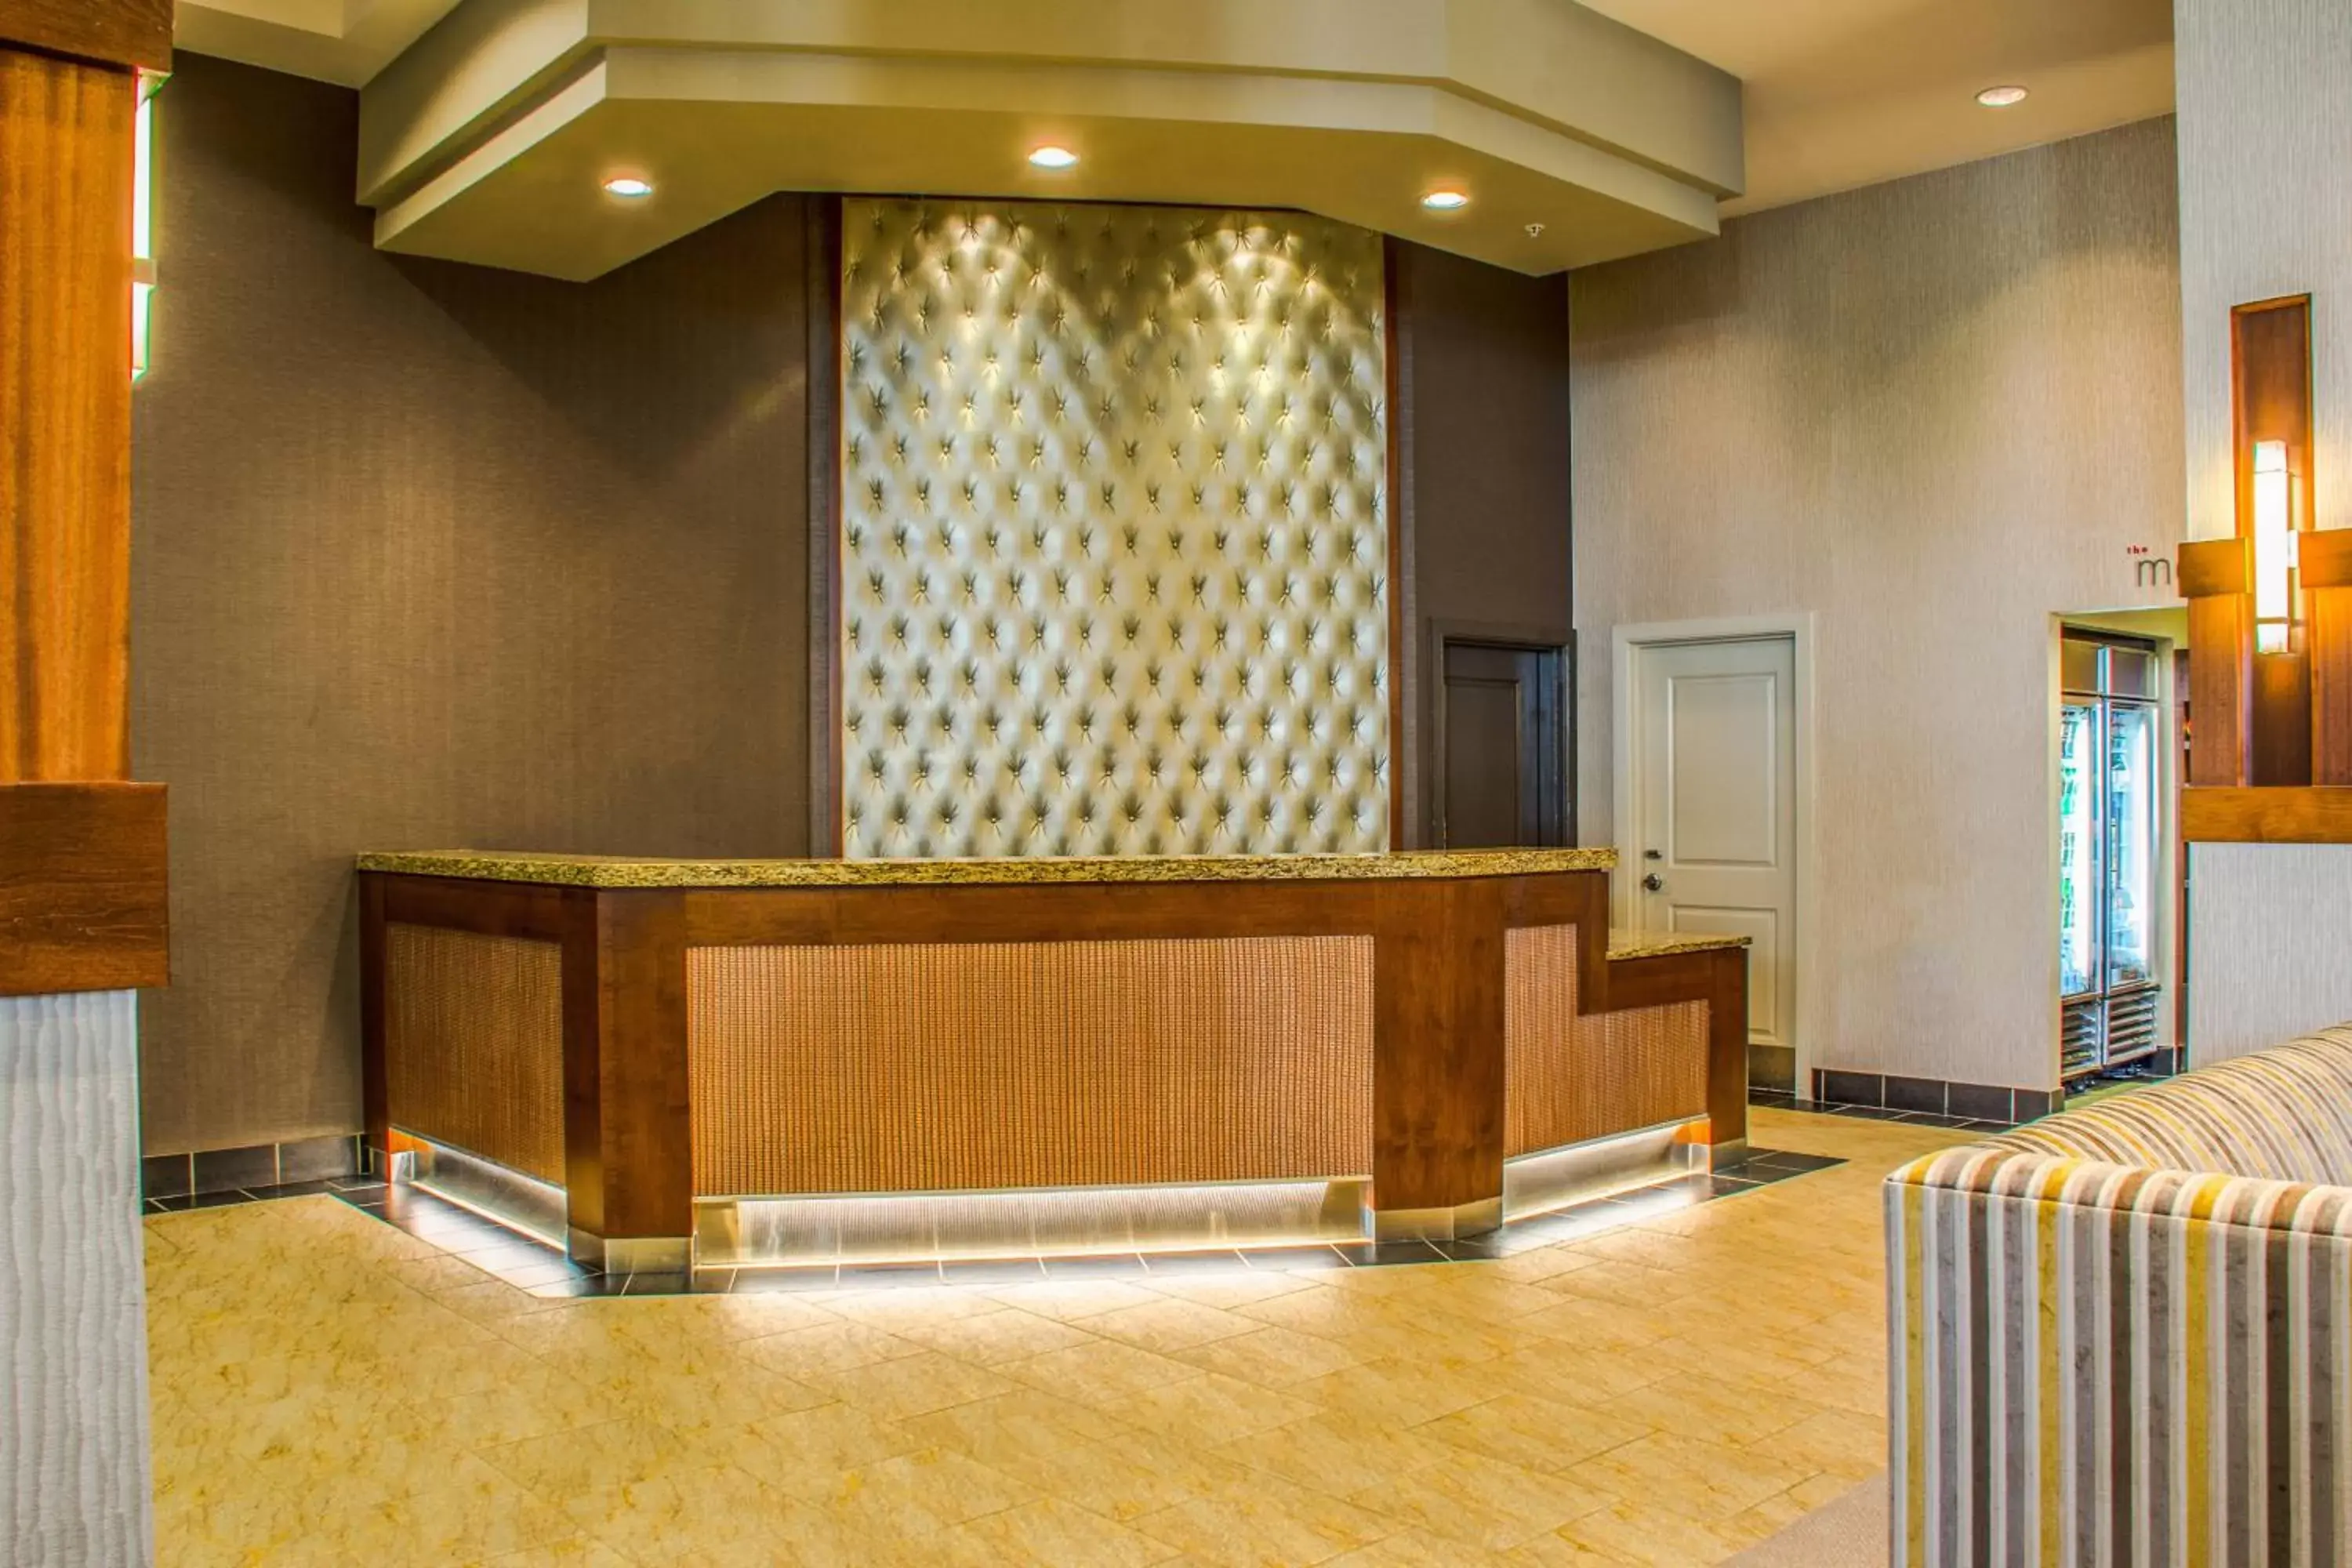 Lobby or reception, Lobby/Reception in Residence Inn Arlington Courthouse